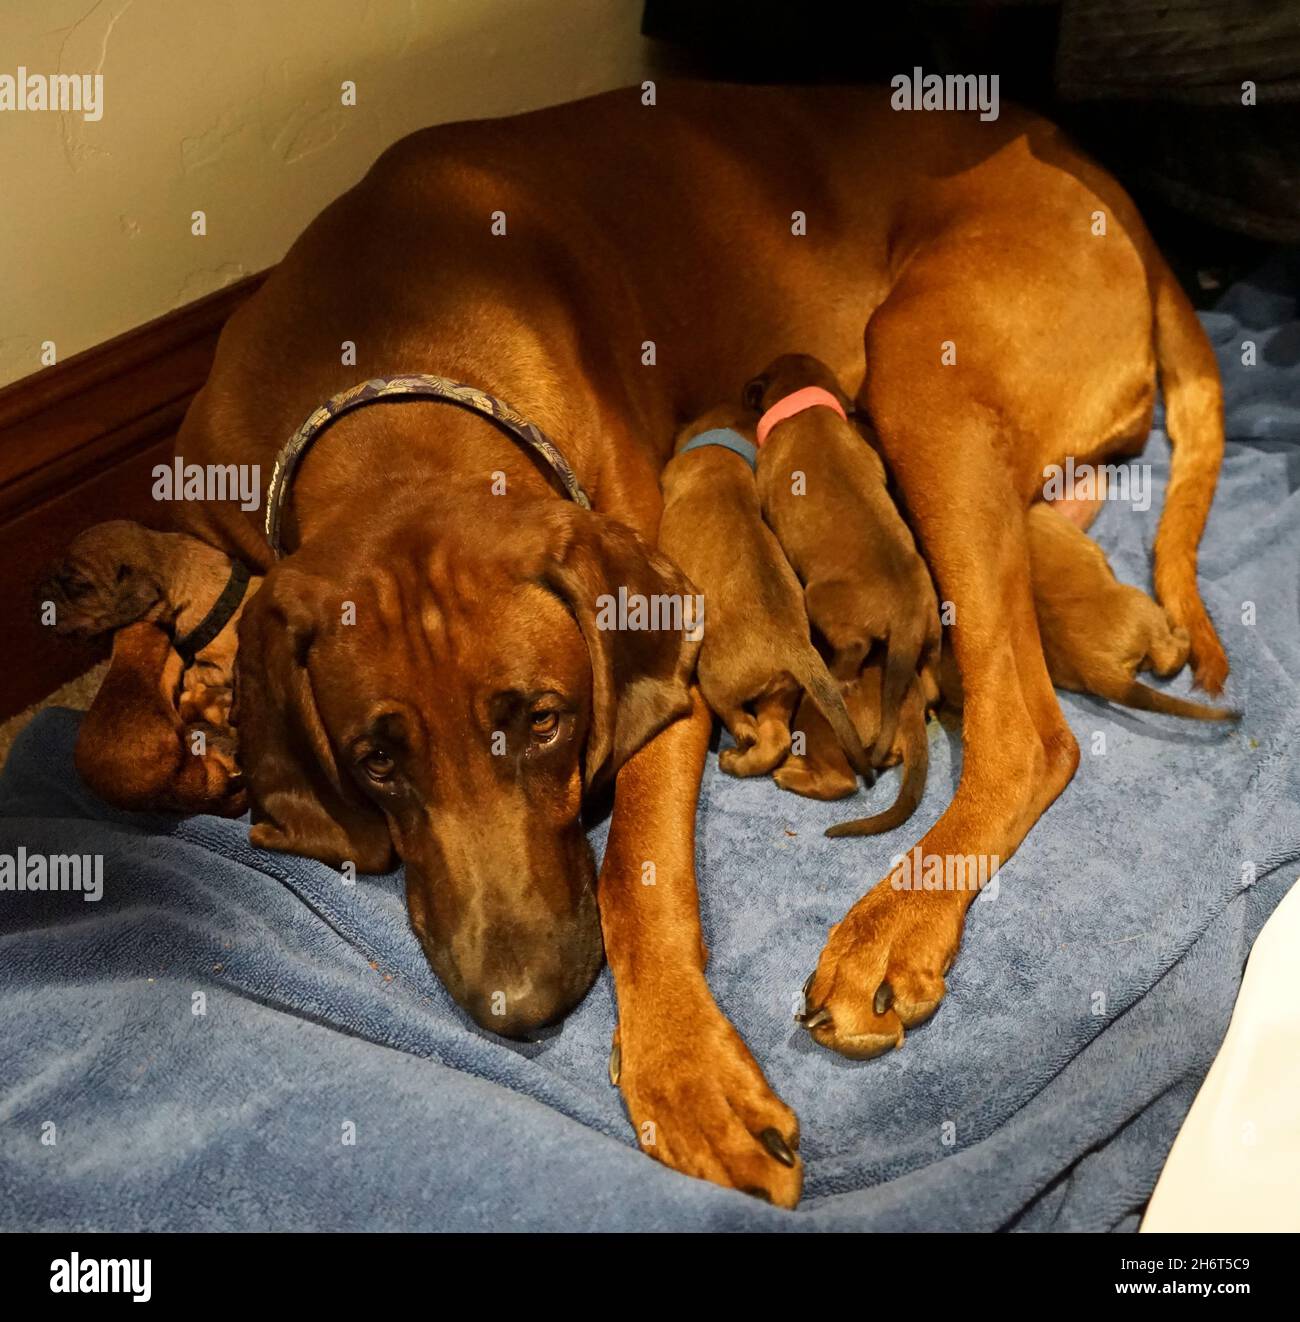 Postpartum Redbone Coonhound Stock Photo